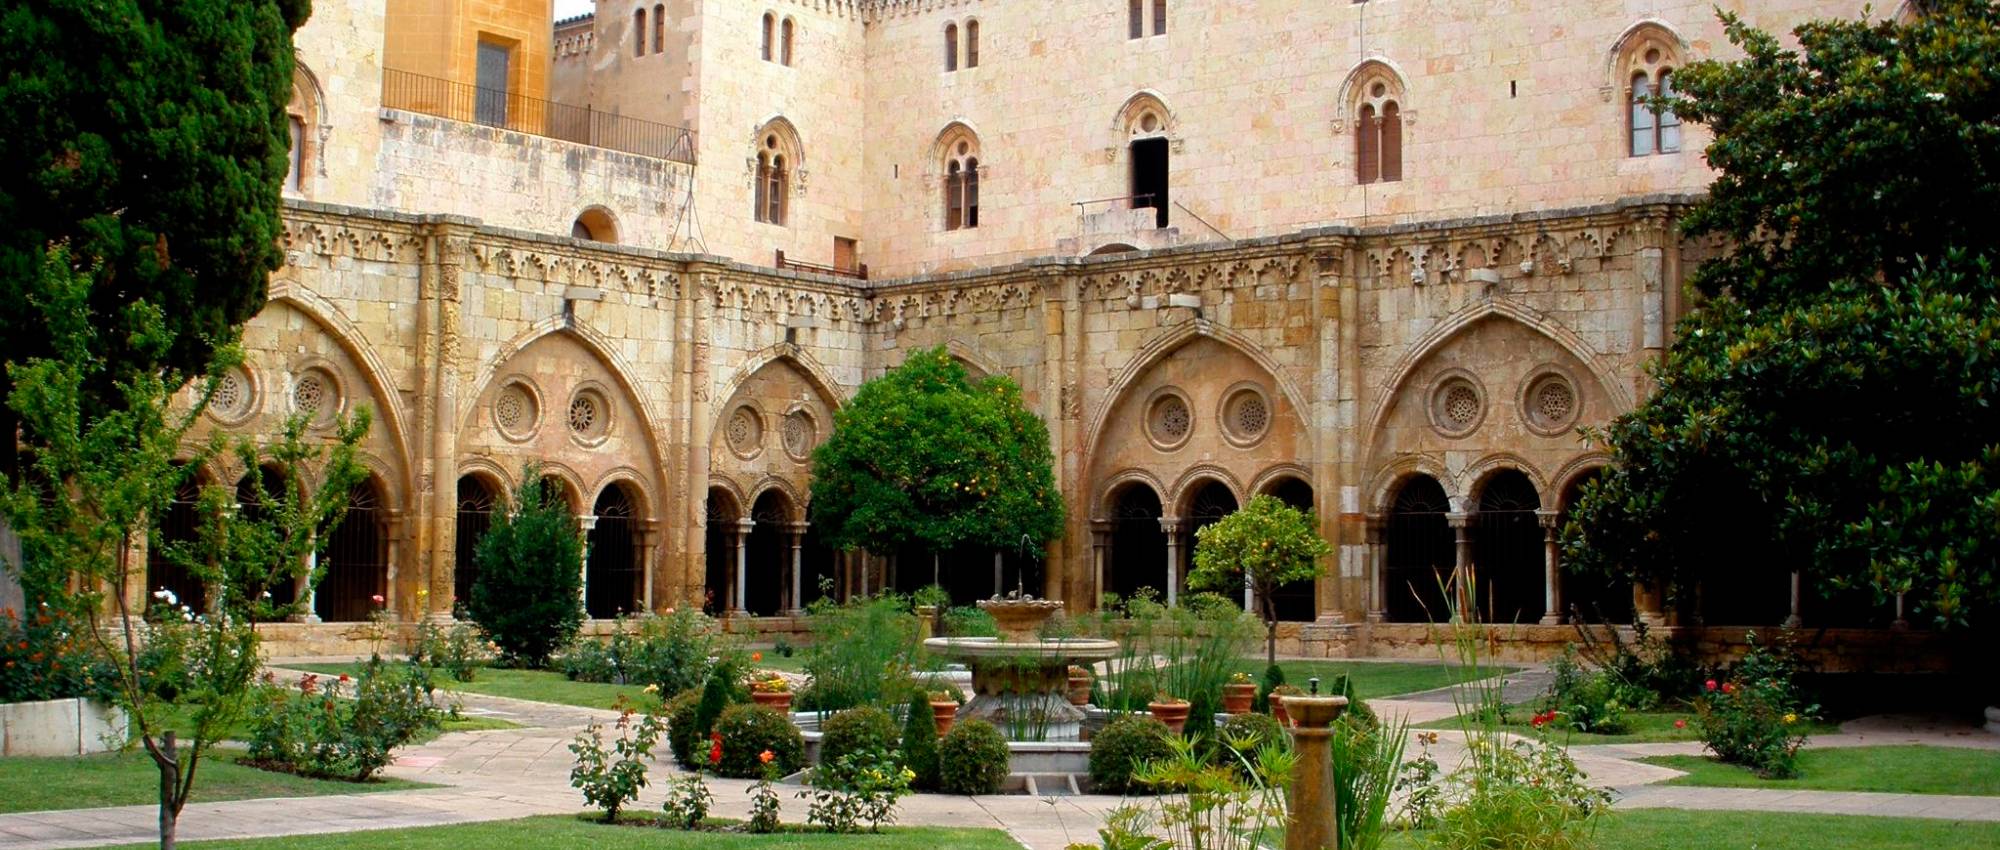 Cathedral of Santa Maria de Tarragona  Cultural Heritage. Goverment of  Catalonia.